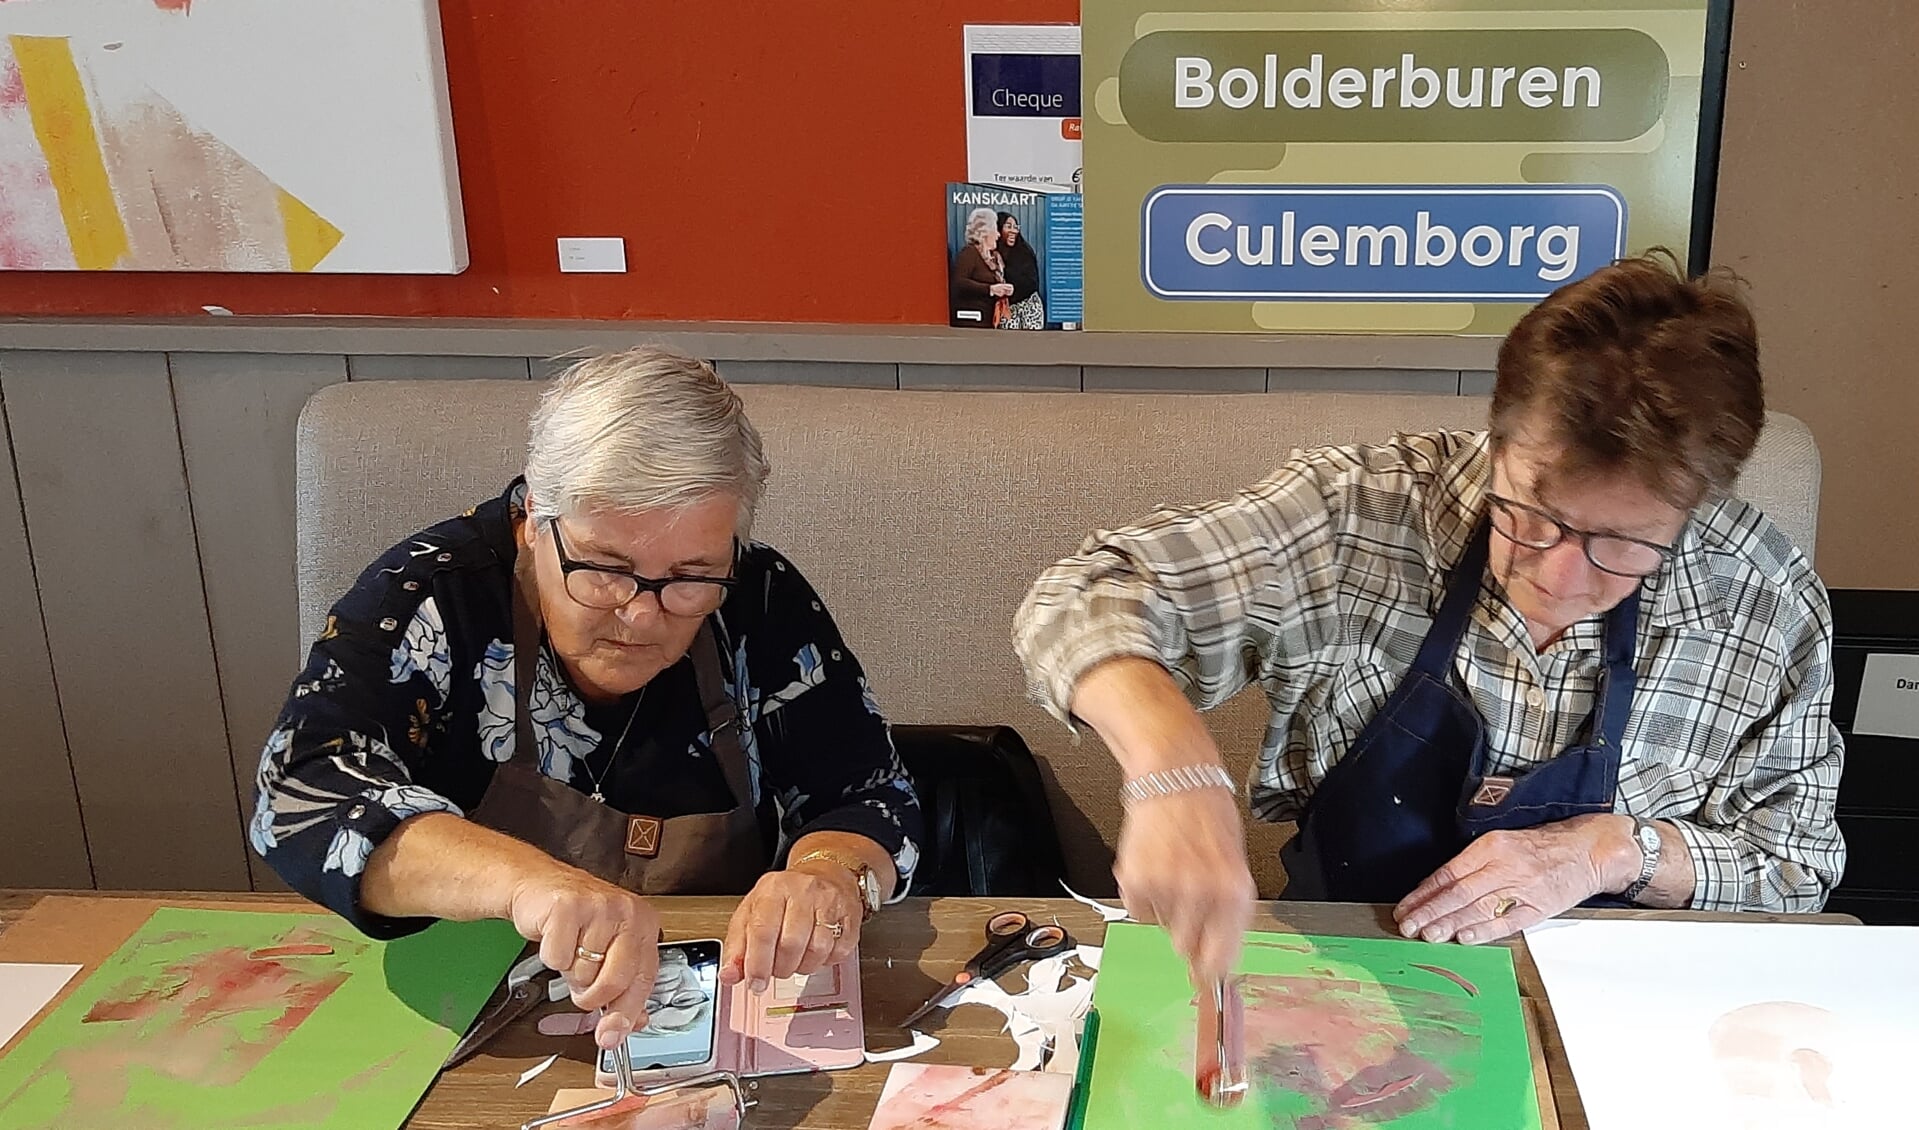 • Gebouw Bolderburen is een belangrijke ontmoetingsplek in de Culemborgse gemeenschap.